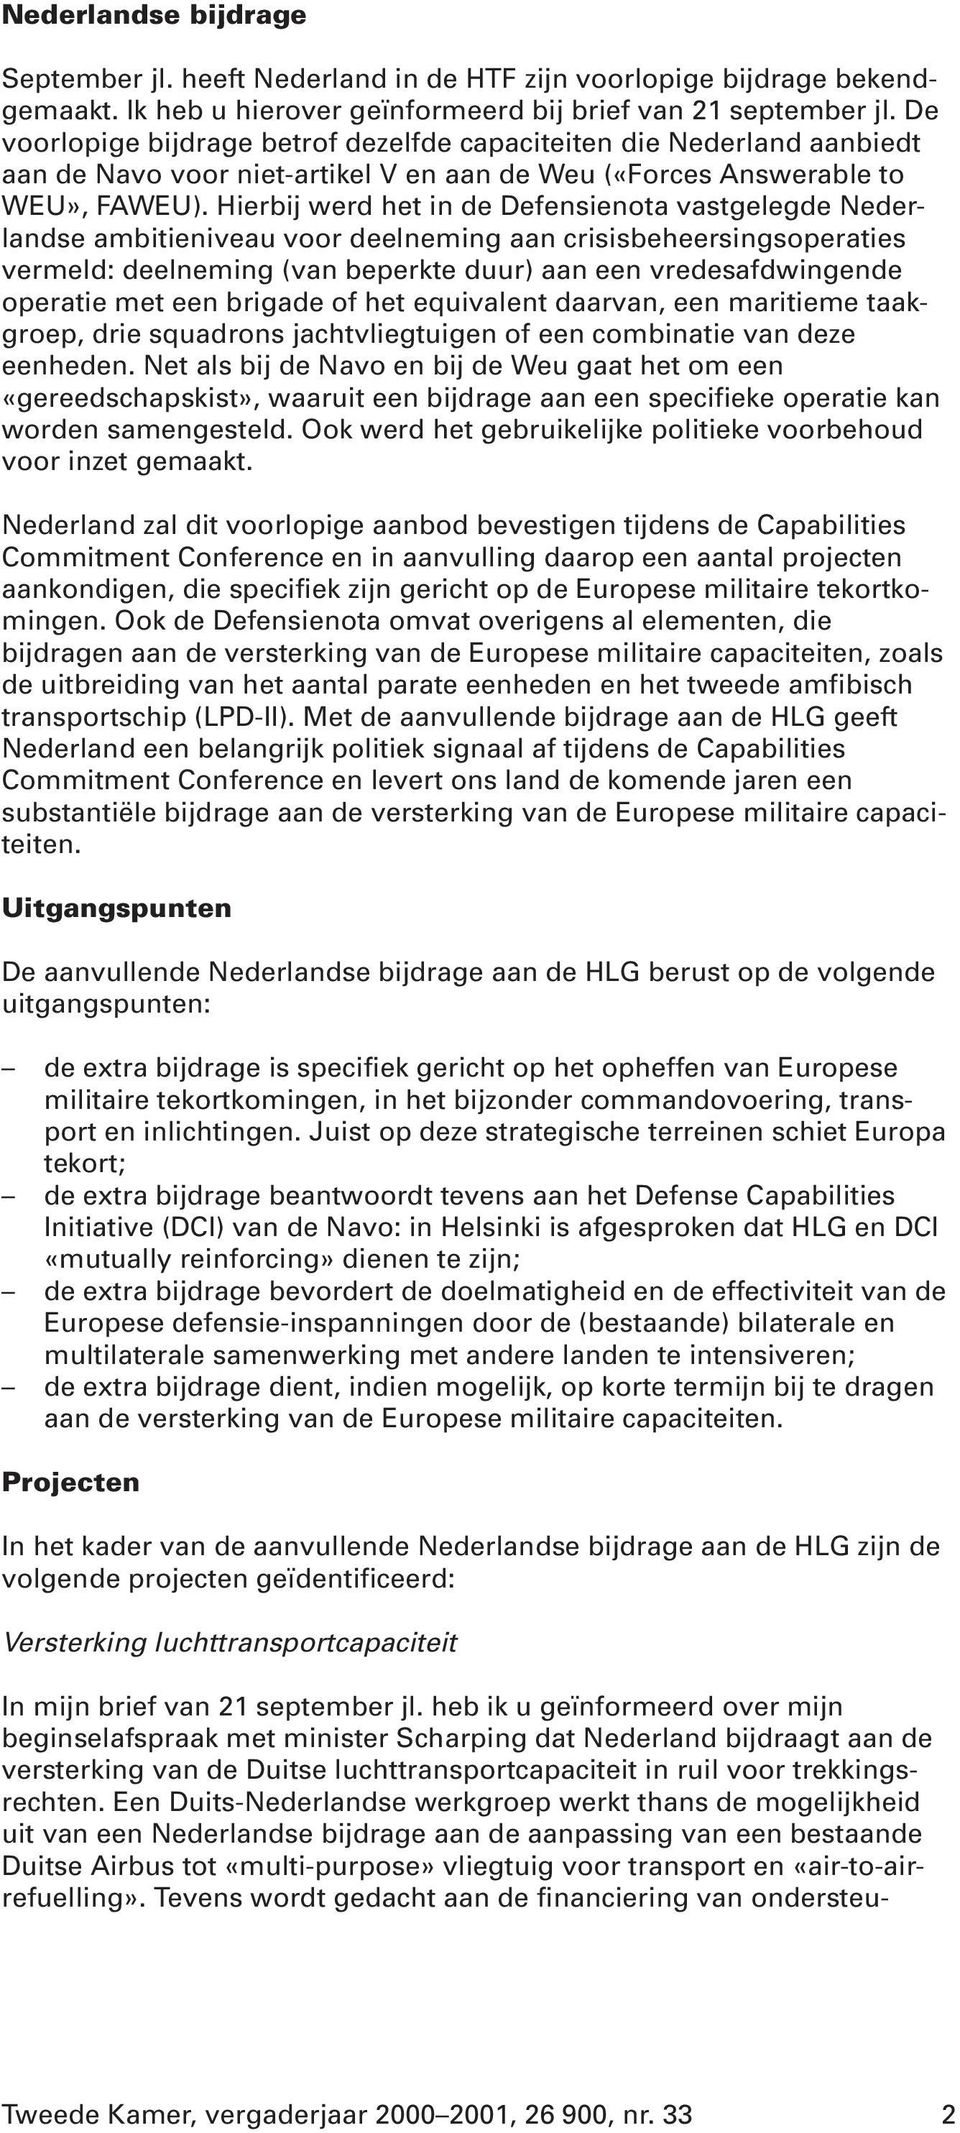 Hierbij werd het in de Defensienota vastgelegde Nederlandse ambitieniveau voor deelneming aan crisisbeheersingsoperaties vermeld: deelneming (van beperkte duur) aan een vredesafdwingende operatie met